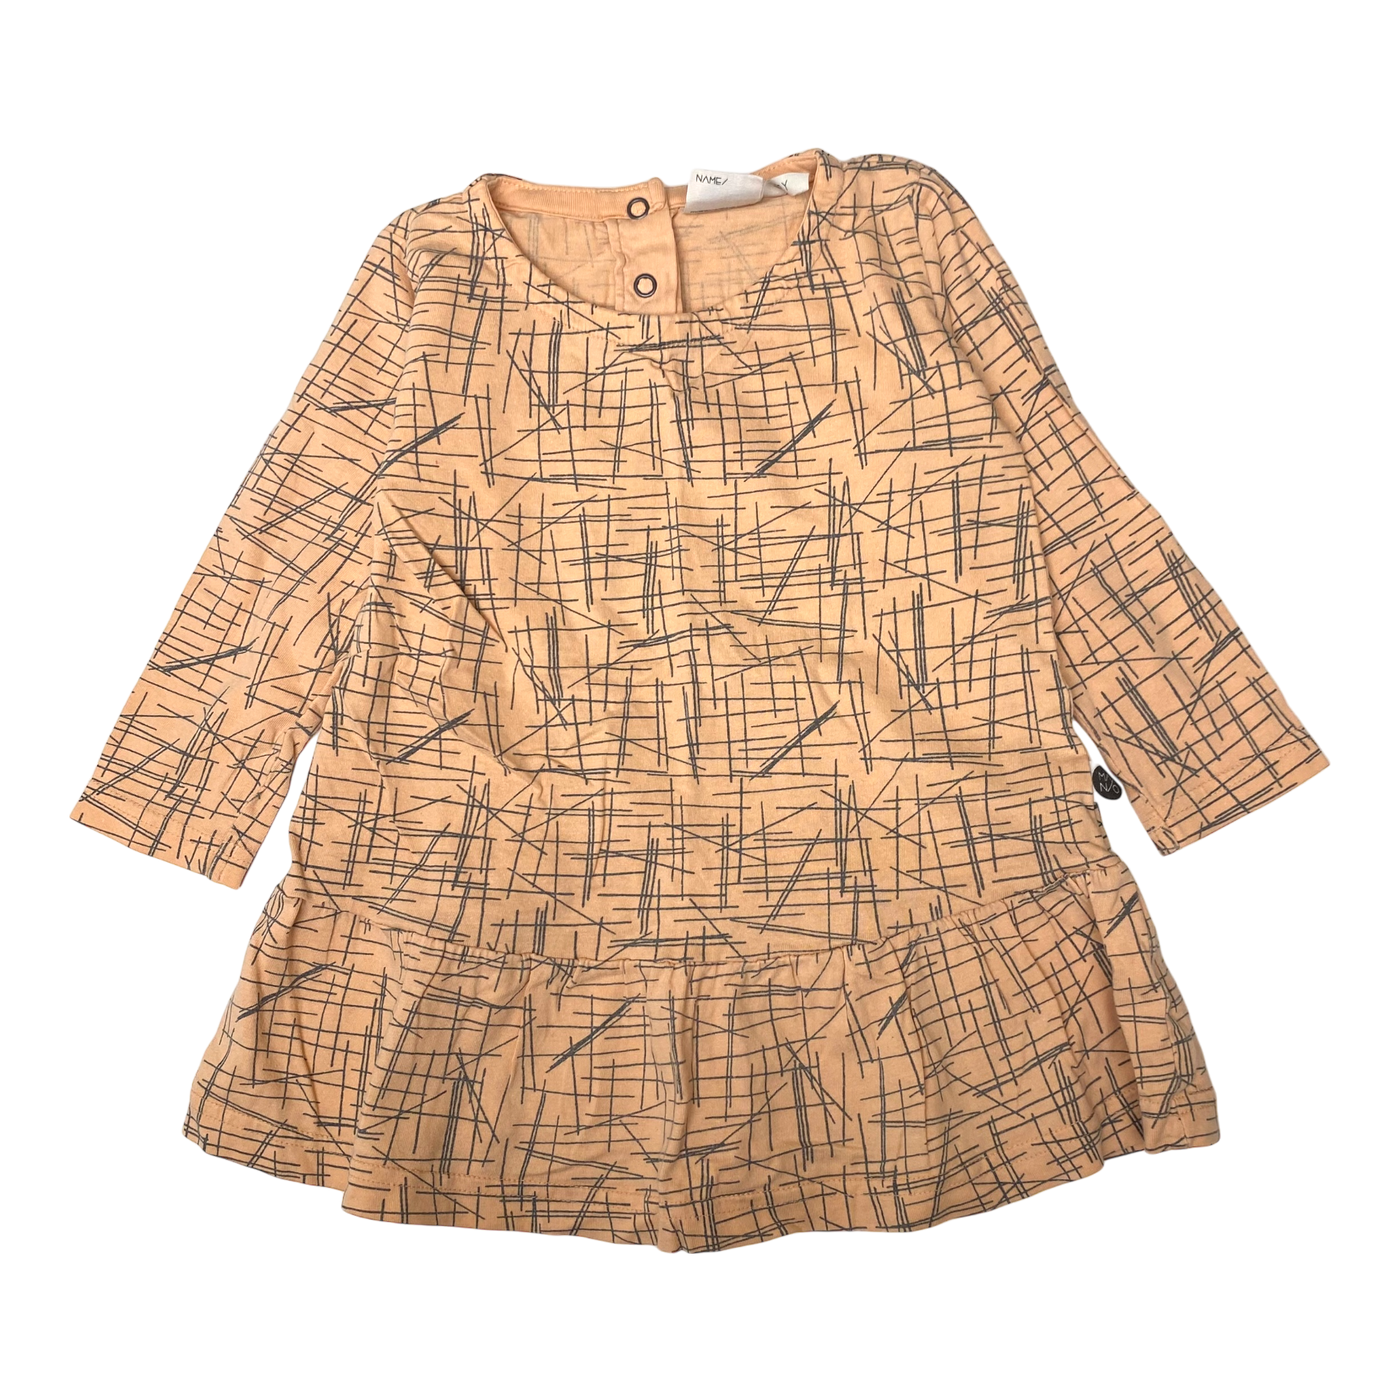 Mainio dress, peach | 86/92cm